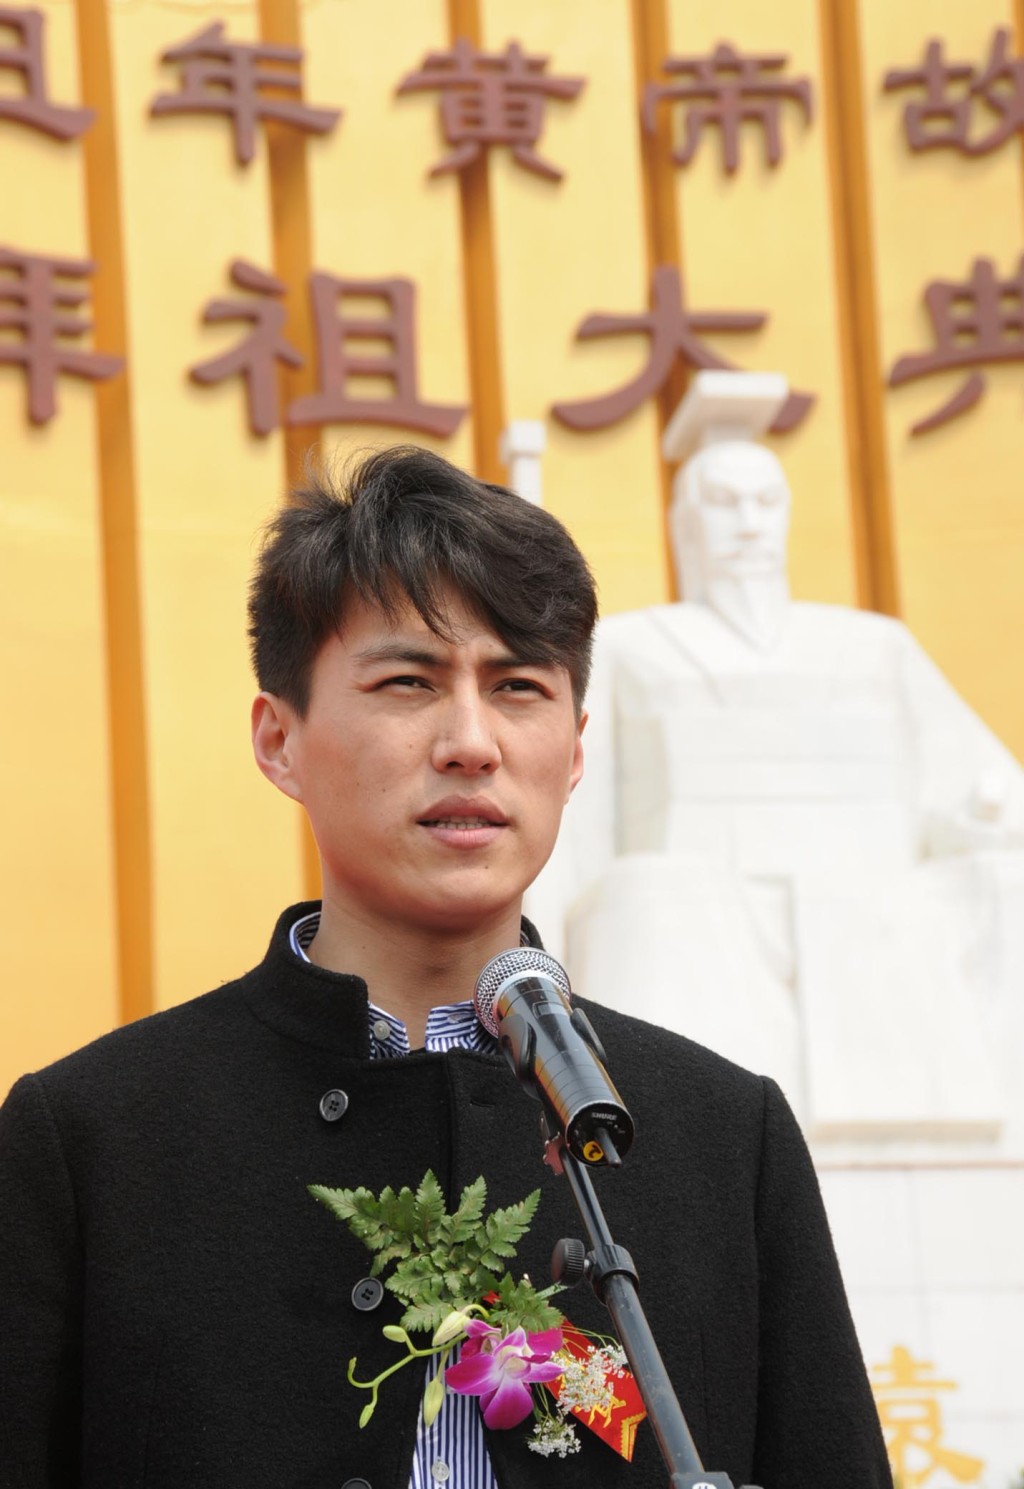 靳东曾在大型史诗电影《黄帝》中出演黄帝。 中新社